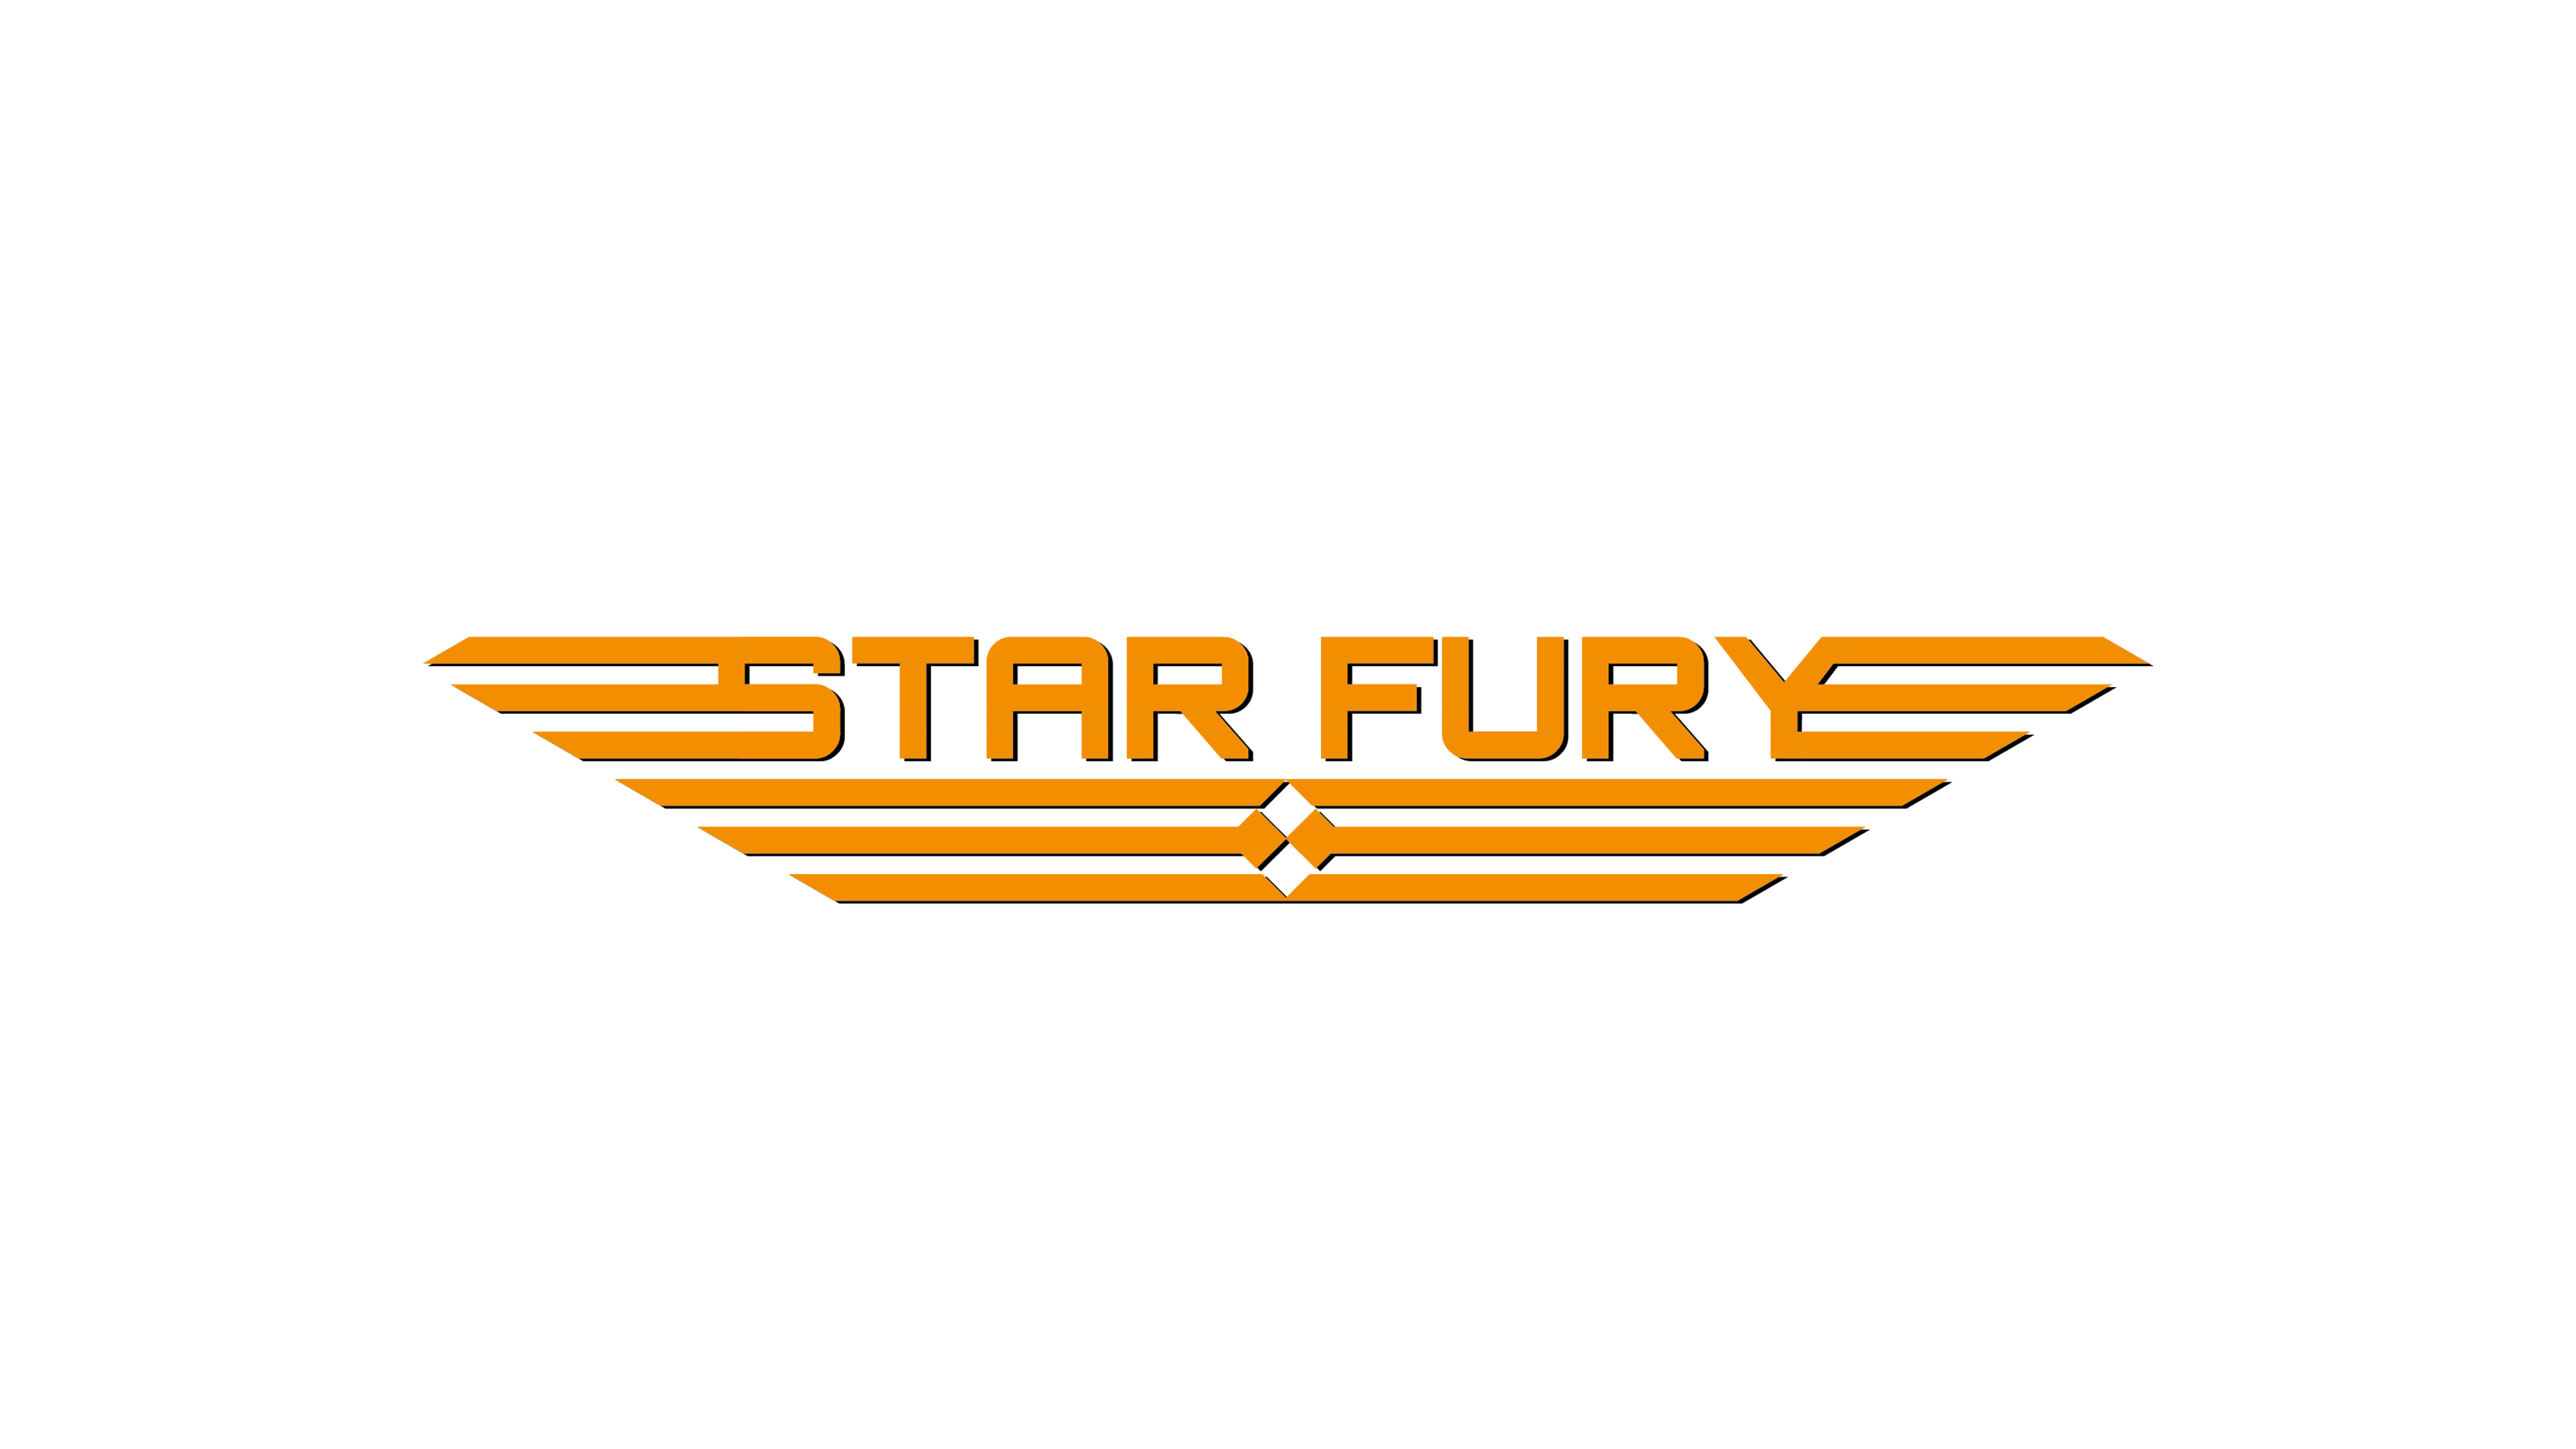 Star Fury